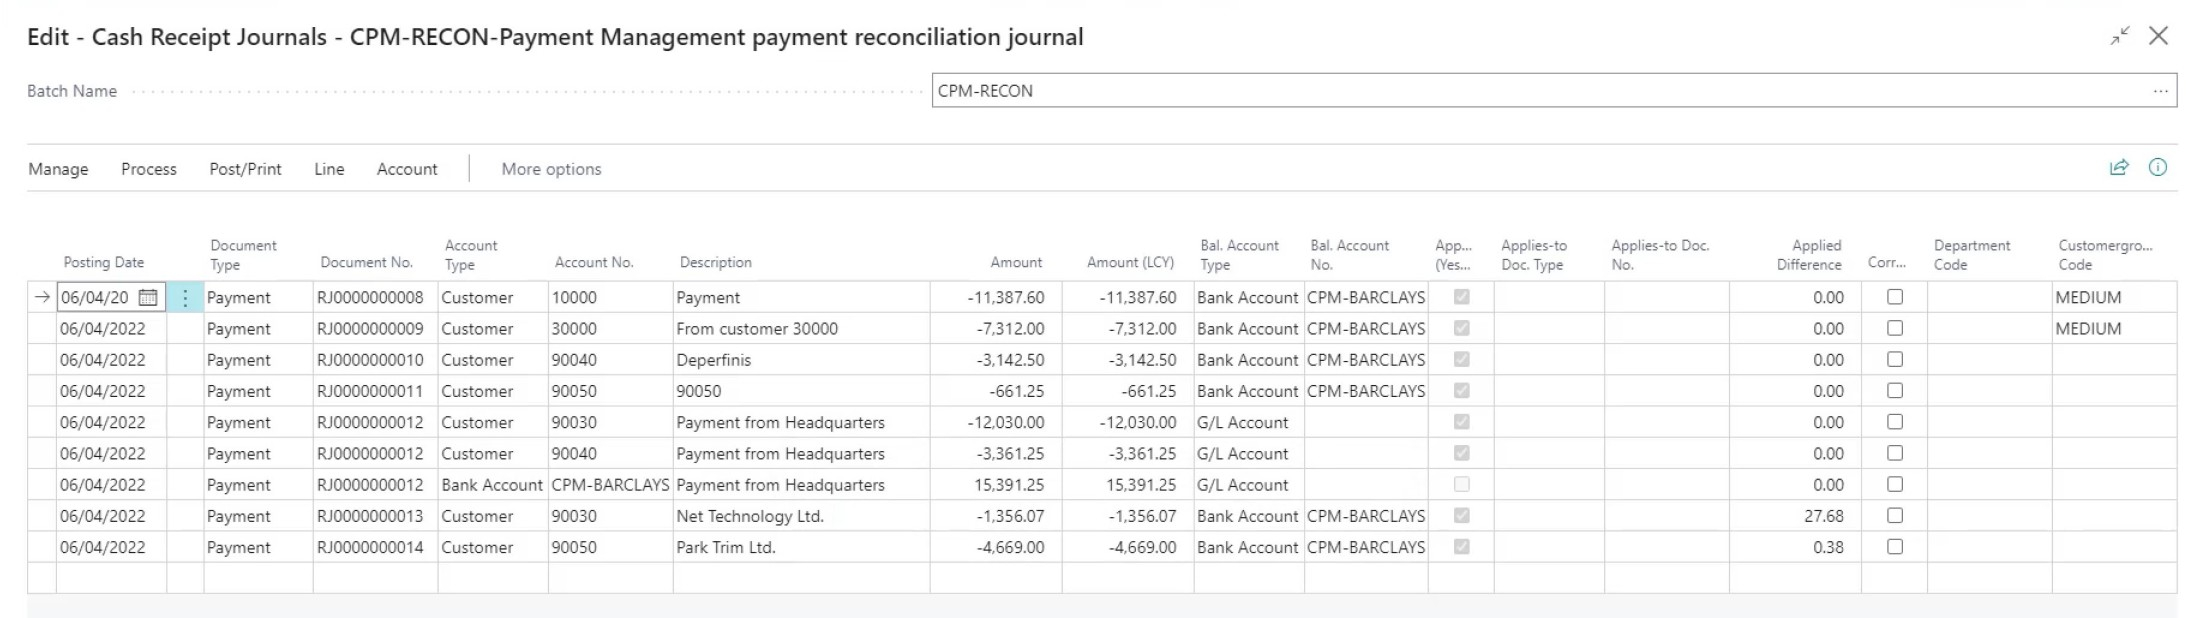 PM_Bank acc recon_cash receipt journal